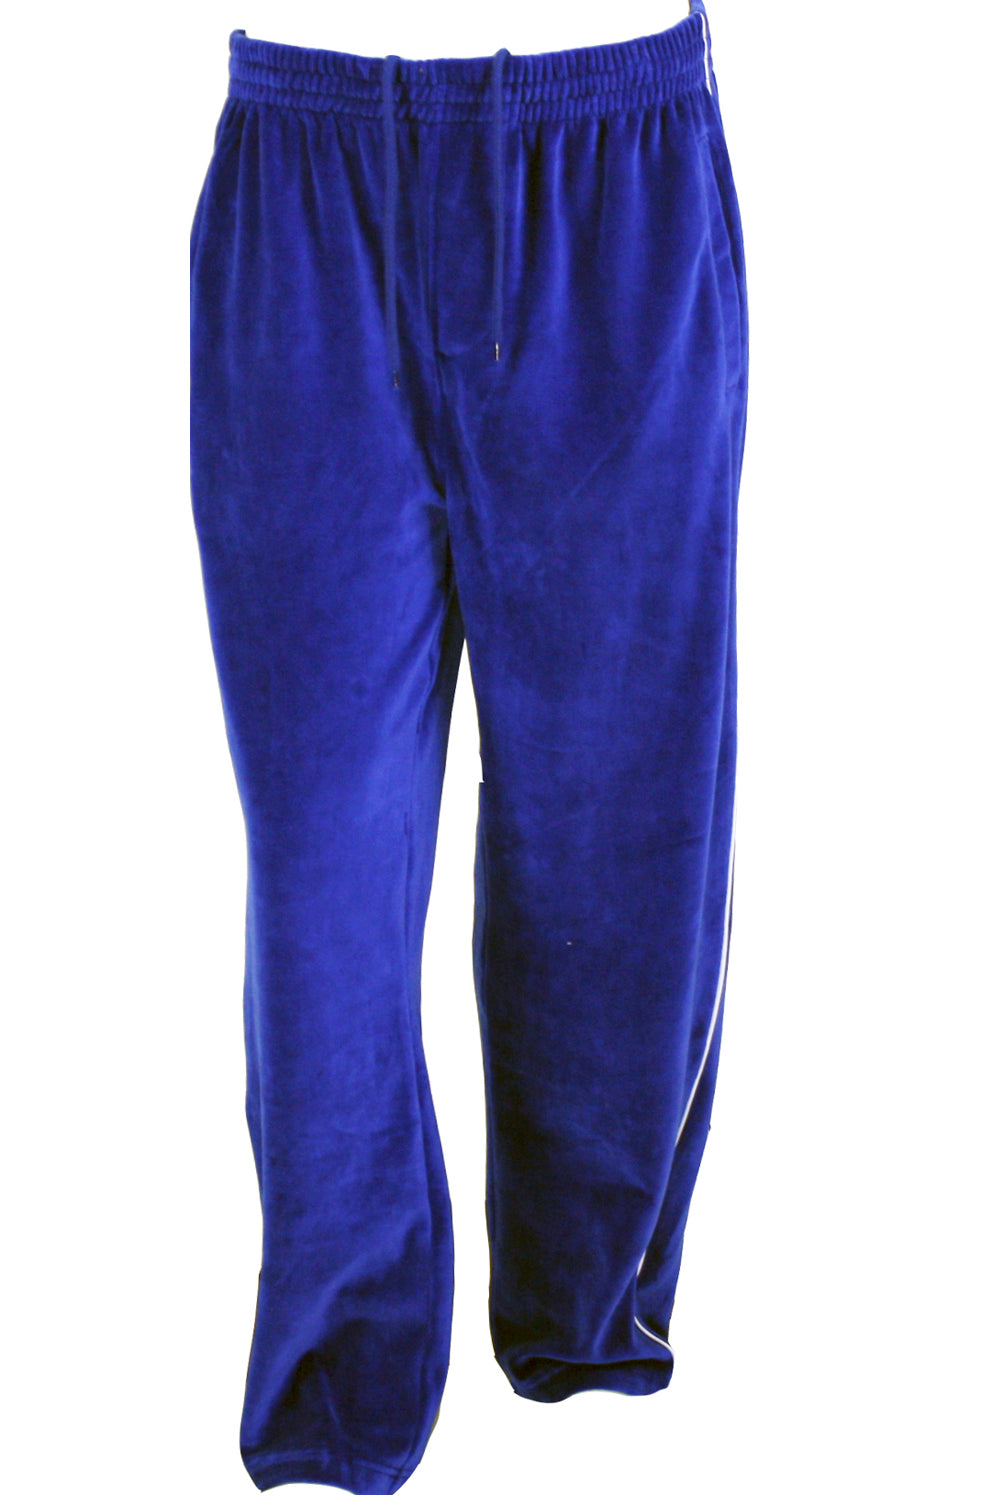 Men's Blue Dress Pants | Suits for Weddings & Events